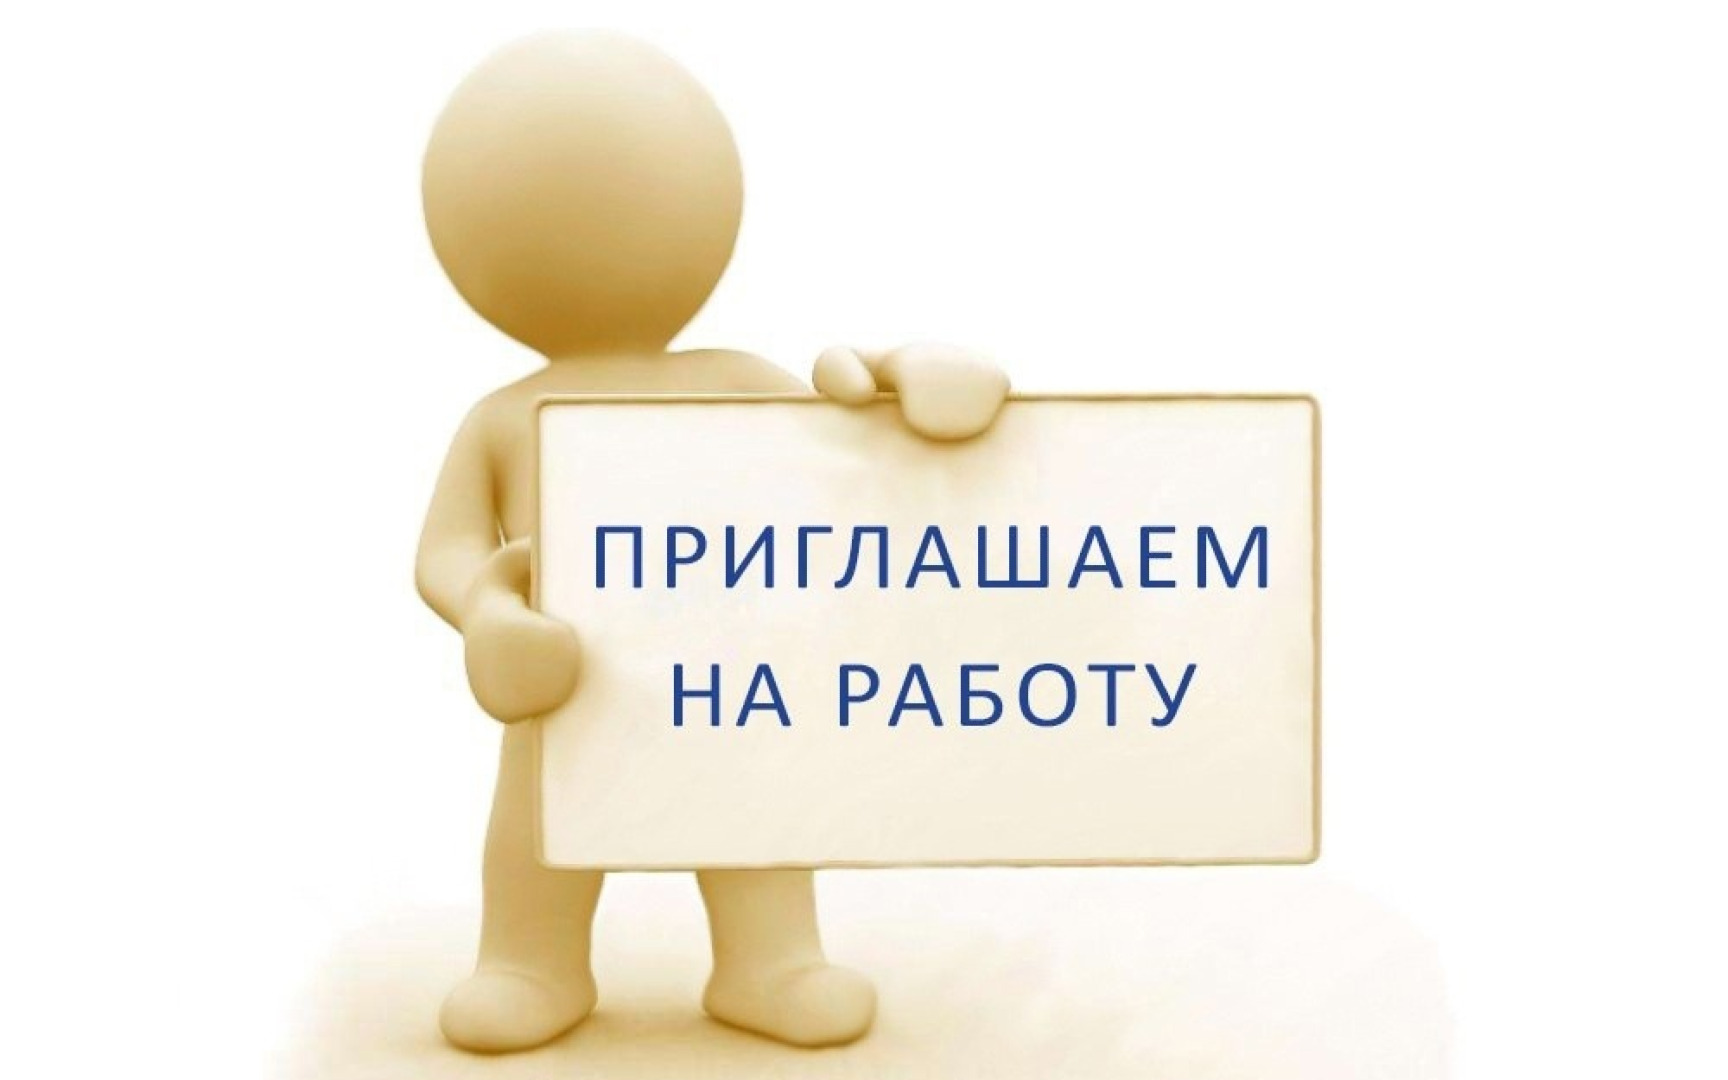 В ЦВК "Медея" (ж/р Энергетик) требуется администратор-кассир.